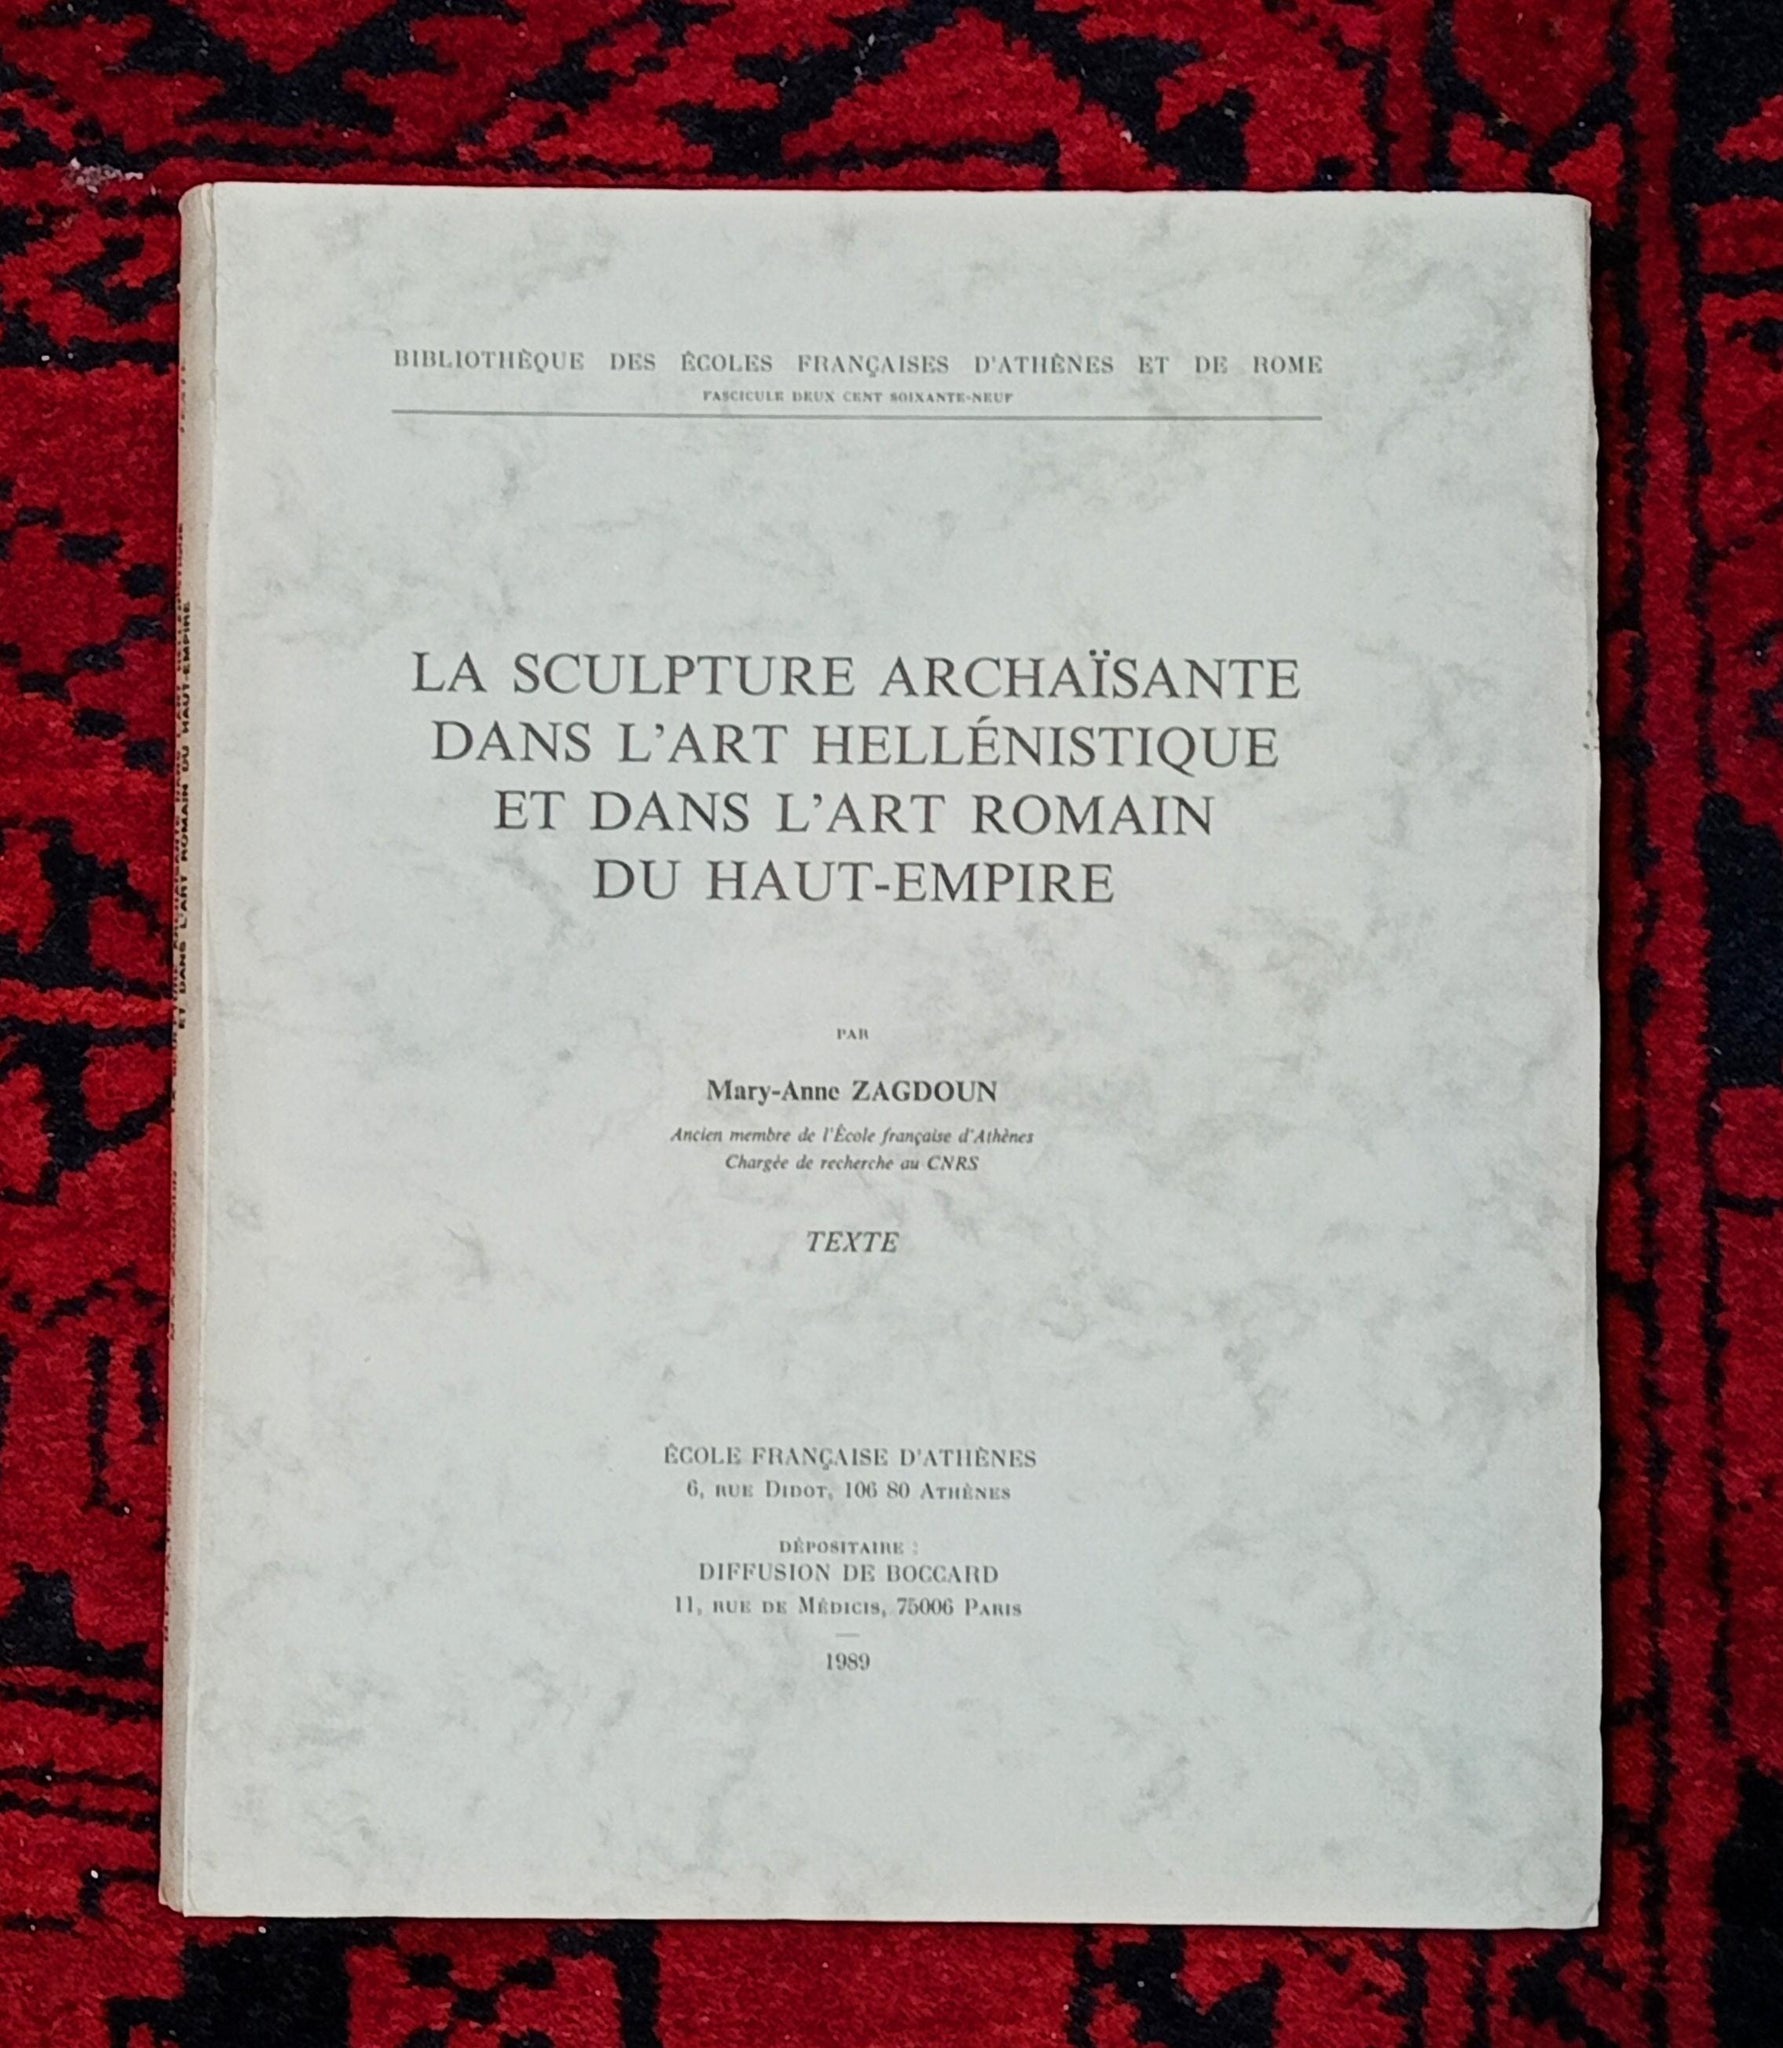 La sculpture archaïsante dans l'art hellénistique et dans l'art romain du Haut-Empire. 2 volumes, texte et planches.